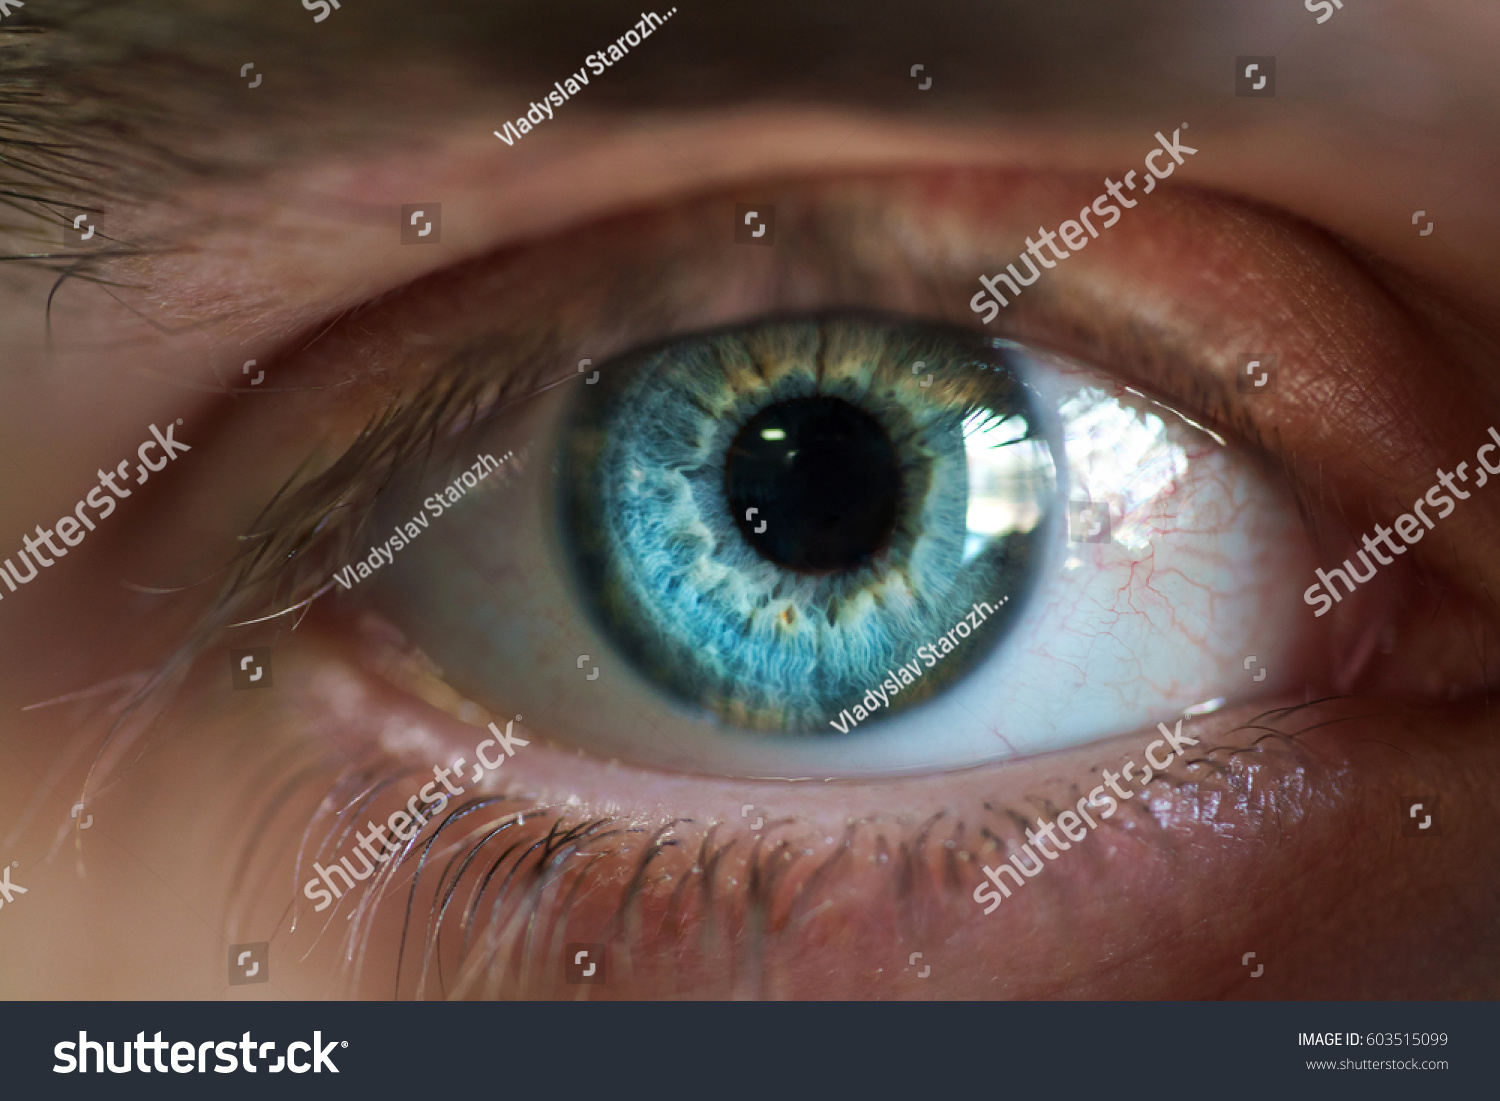 Beautiful blue male eye close-up #603515099